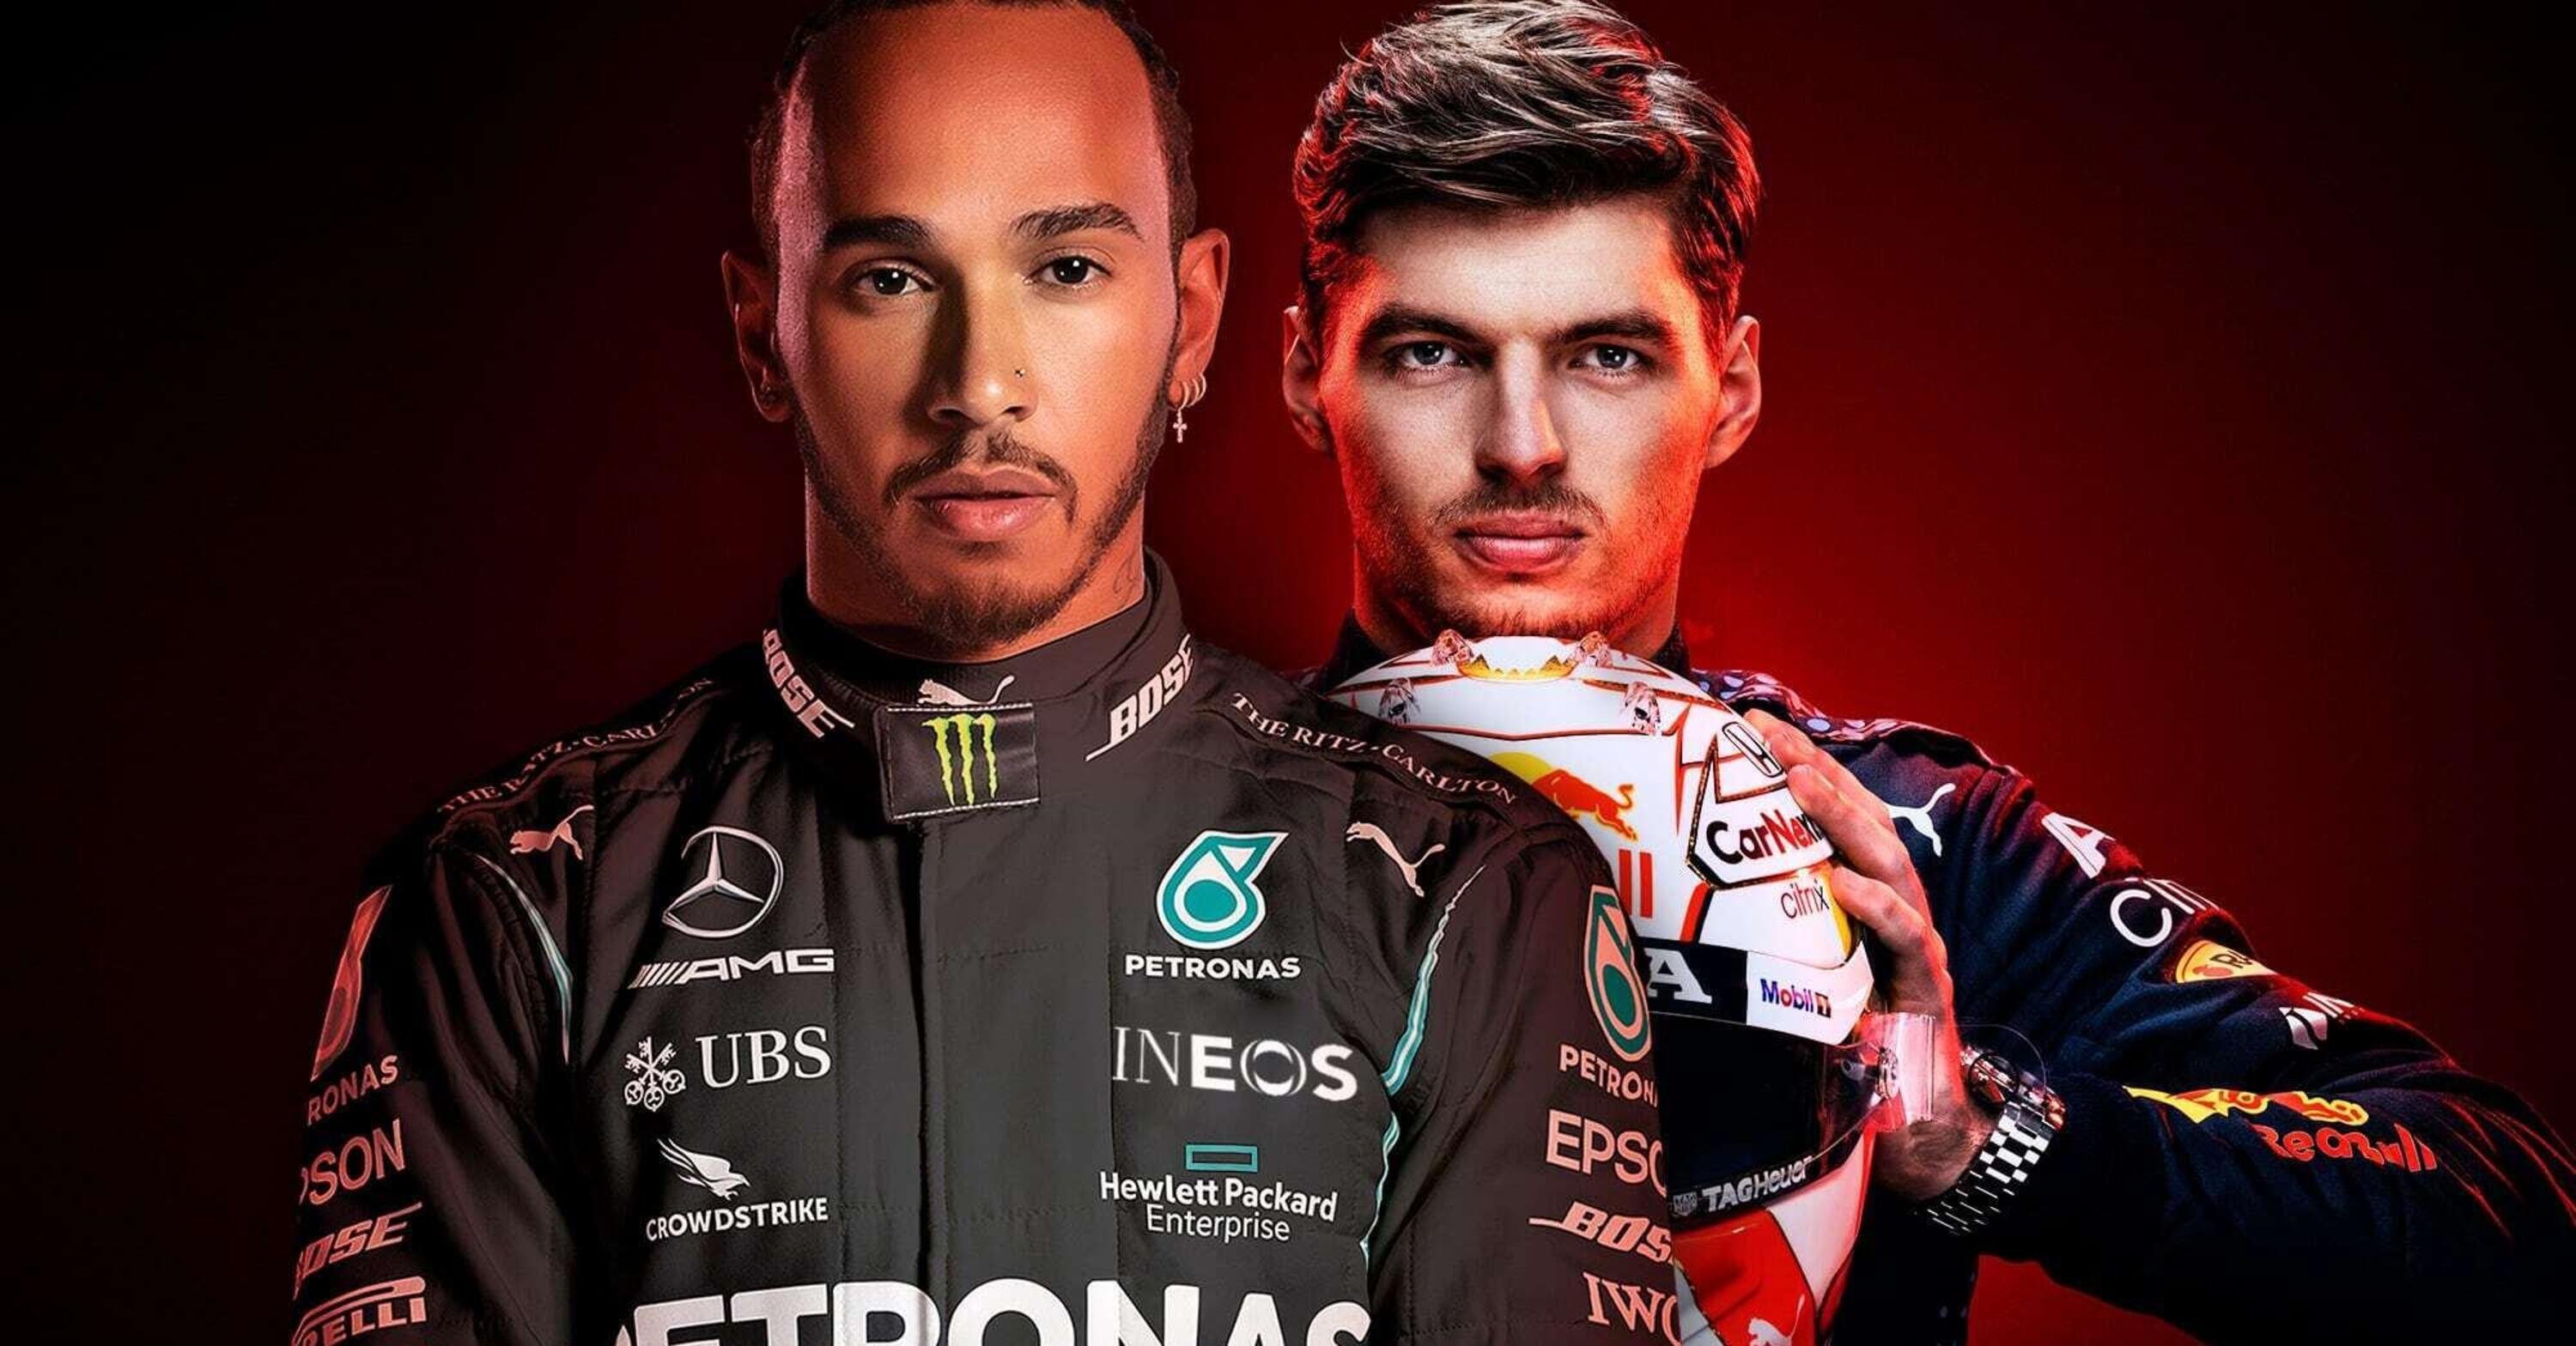 Max Verstappen &egrave; il nuovo Lewis Hamilton della F1